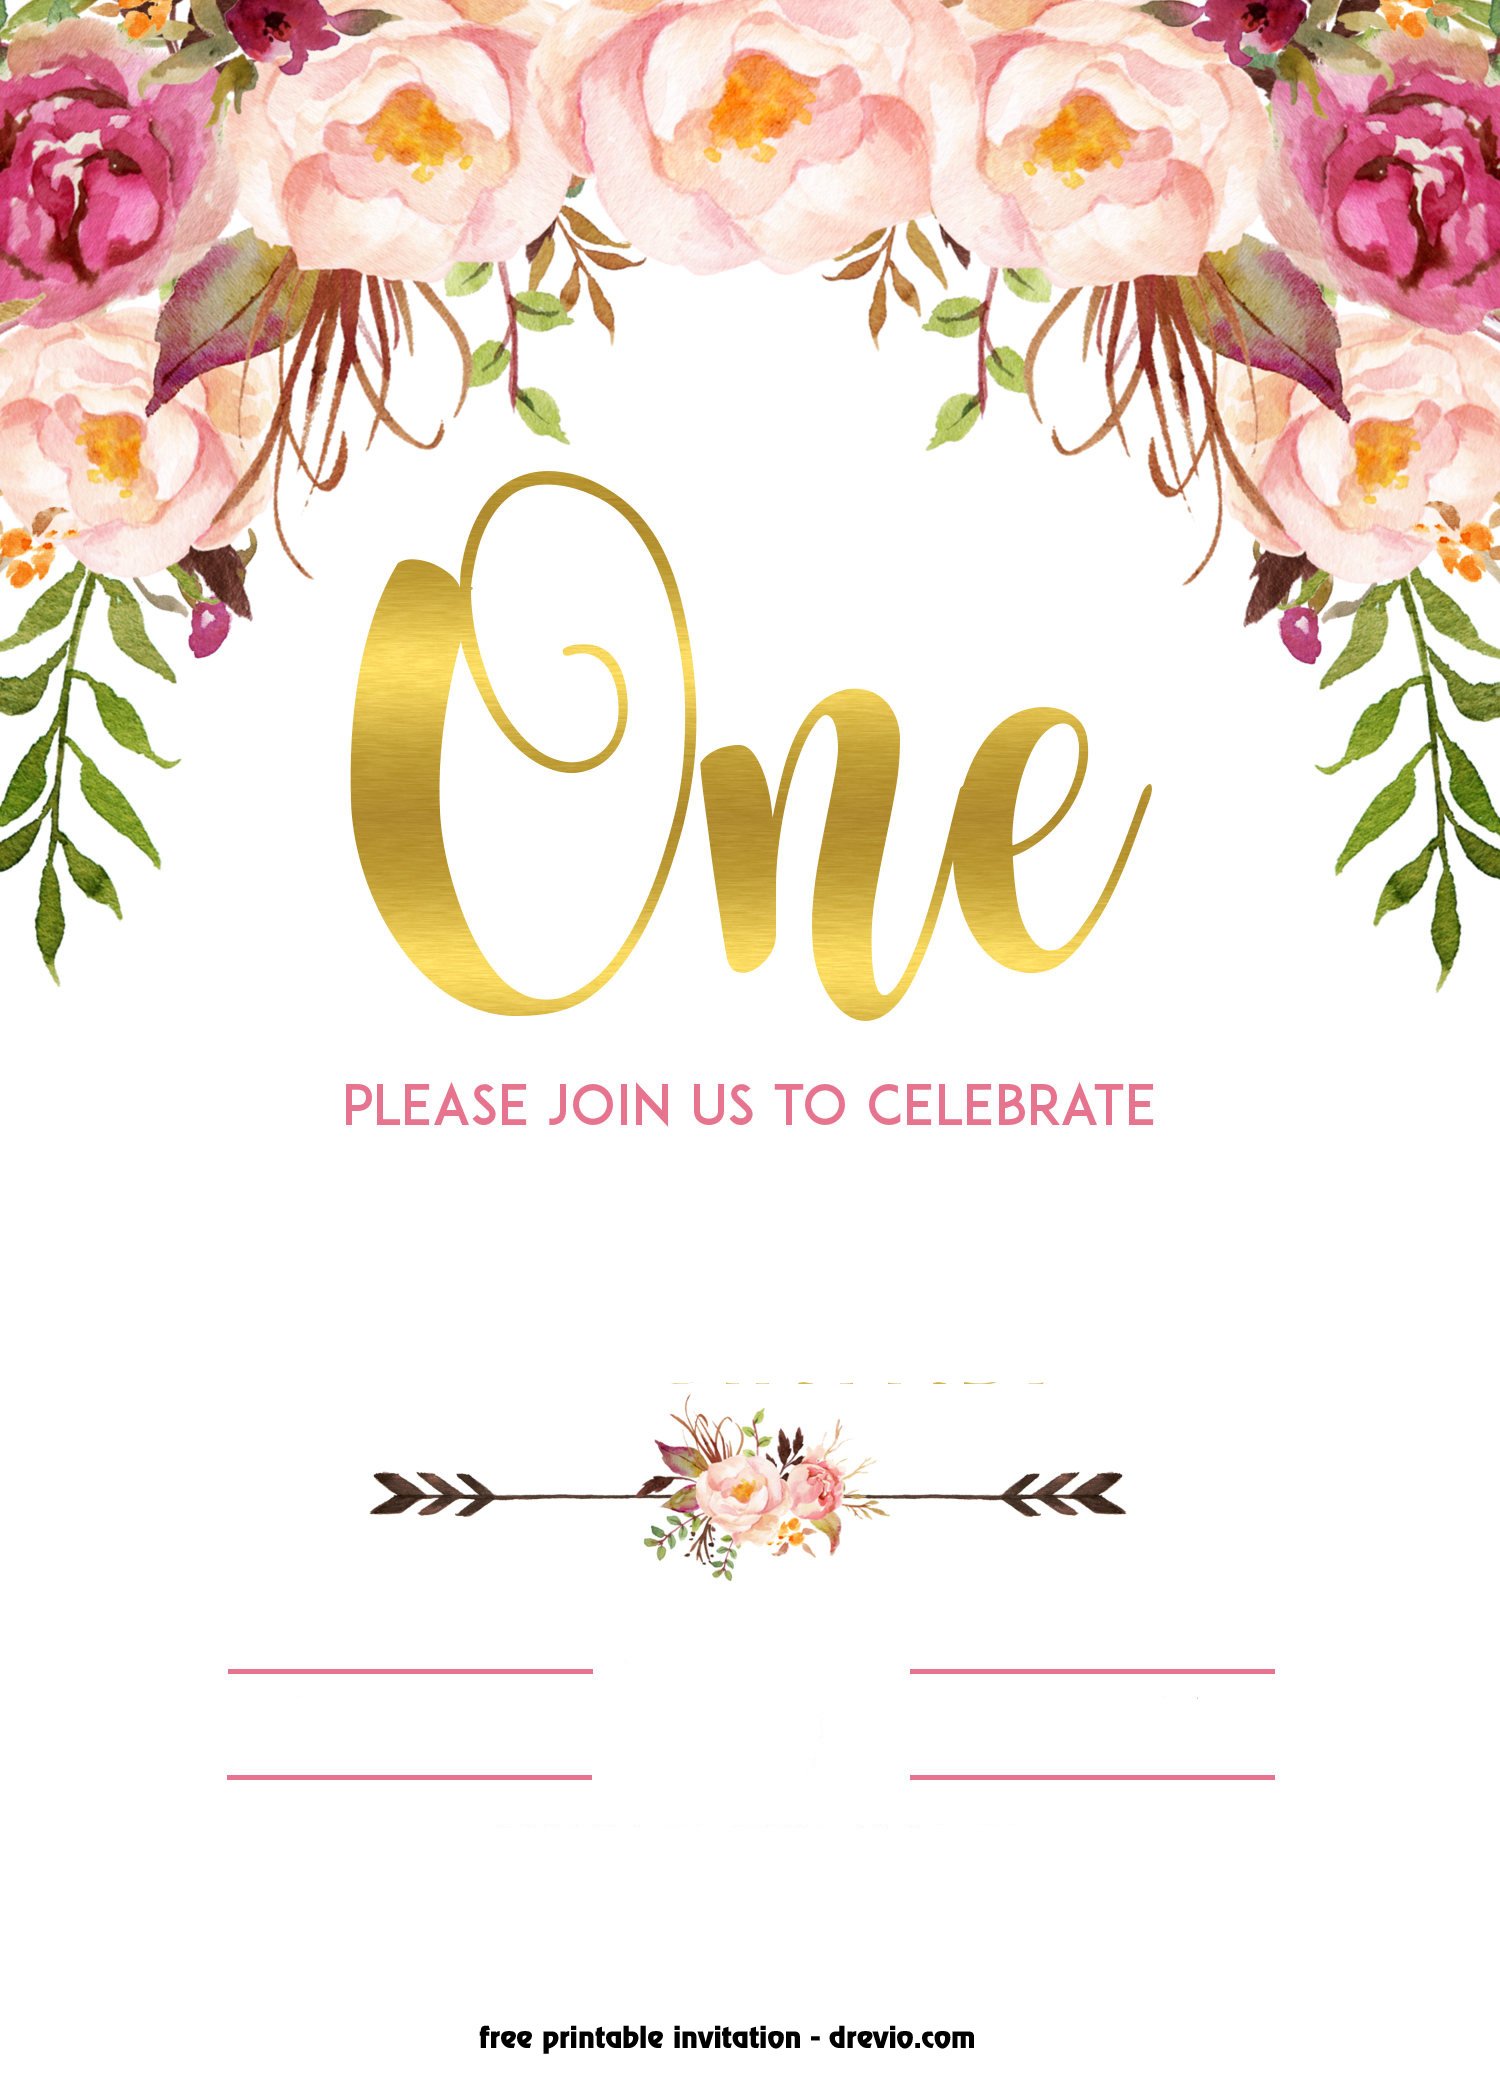 free-printable-1st-birthday-invitation-vintage-style-free